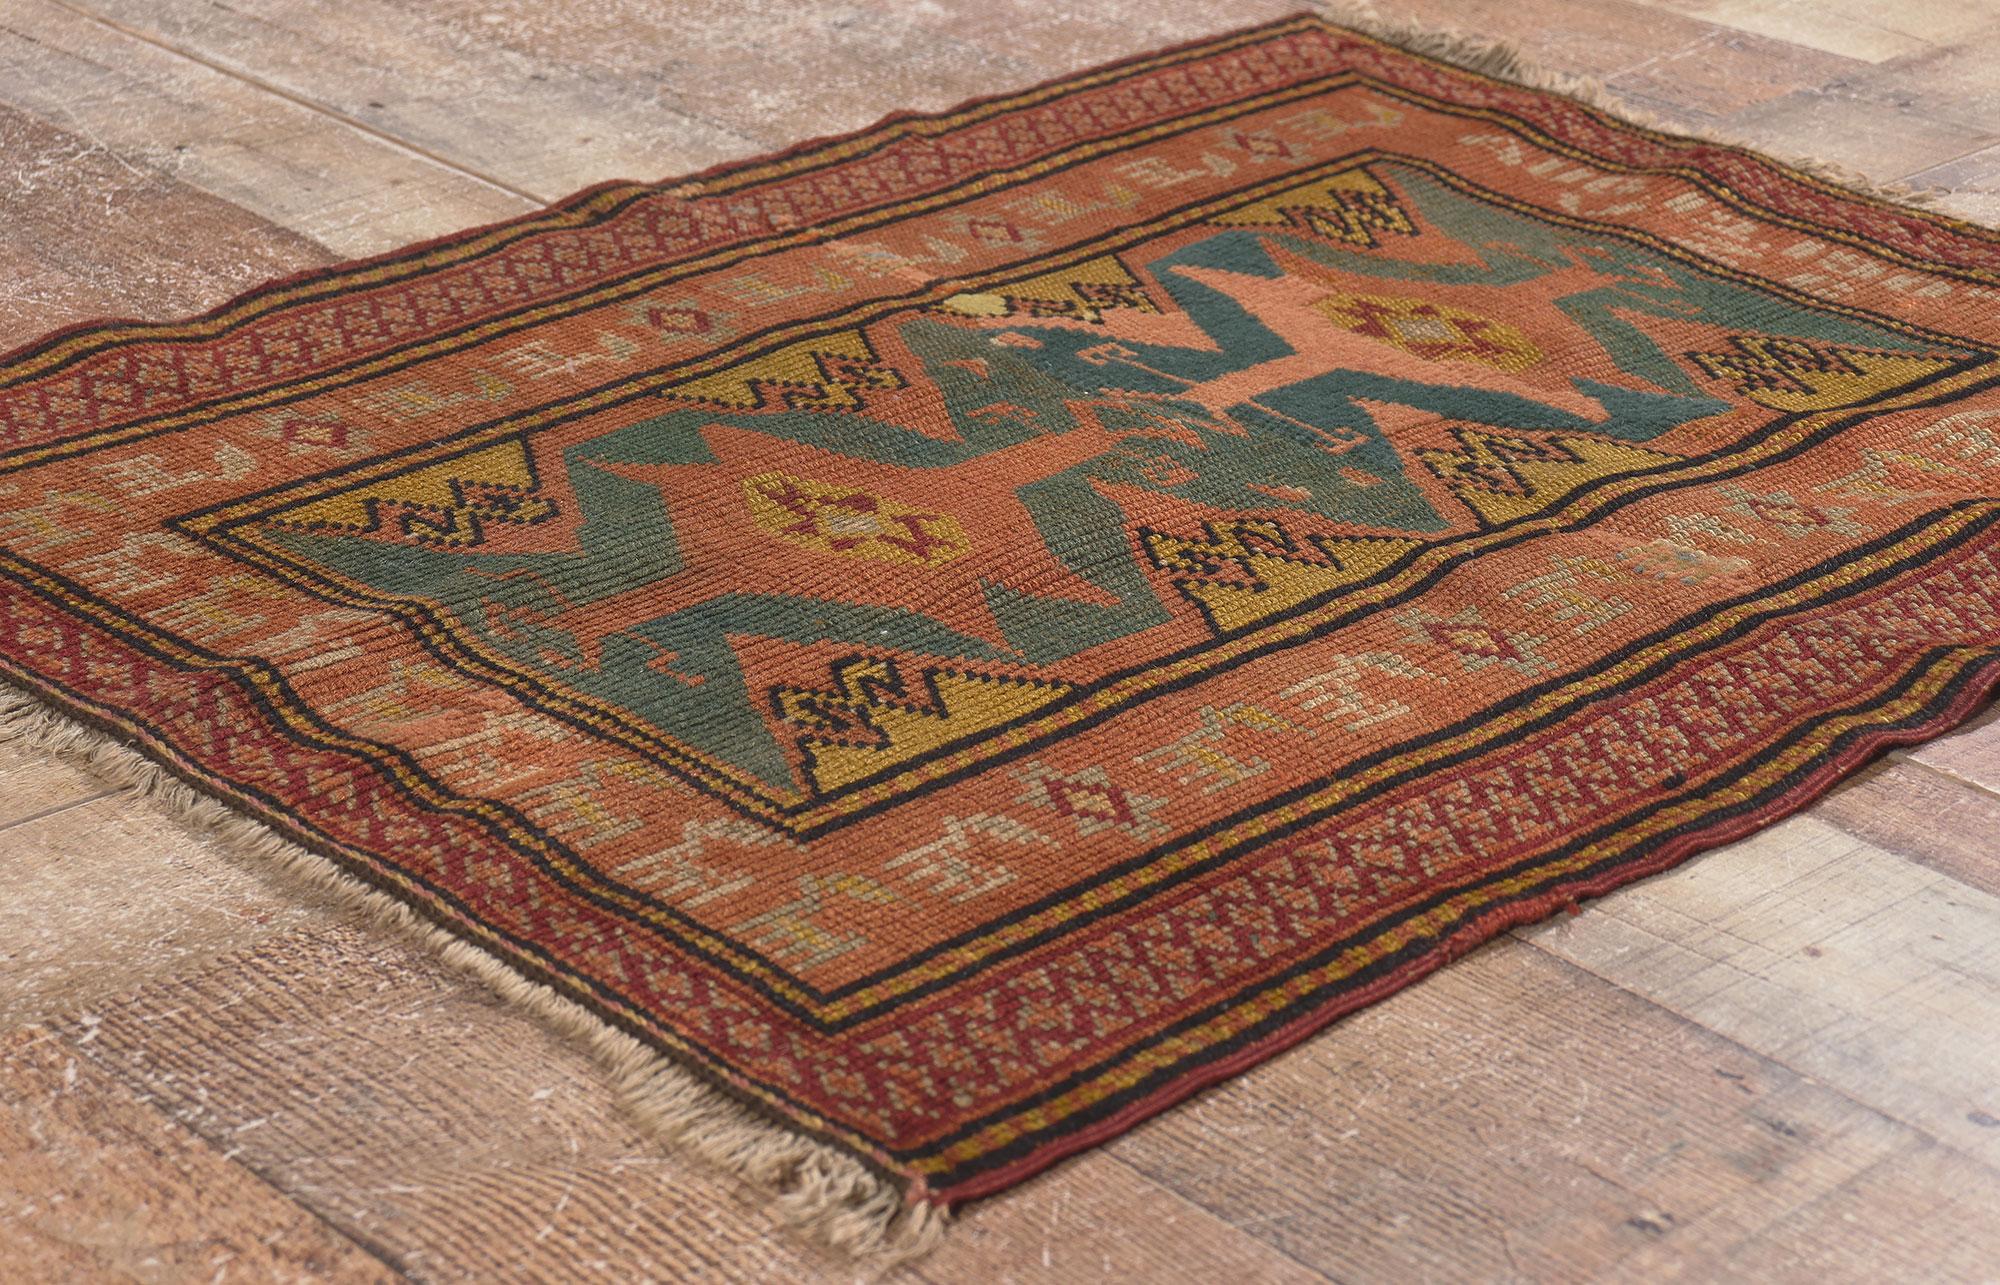 78698 Antiker türkischer Oushak-Teppich, 02'02 x 02'07. Dieser antike türkische Oushak-Teppich aus handgeknüpfter Wolle, datiert auf den 12. August 1907 und mit den Initialen VZC versehen, ist ein Beispiel für die Bedeutung signierter und datierter